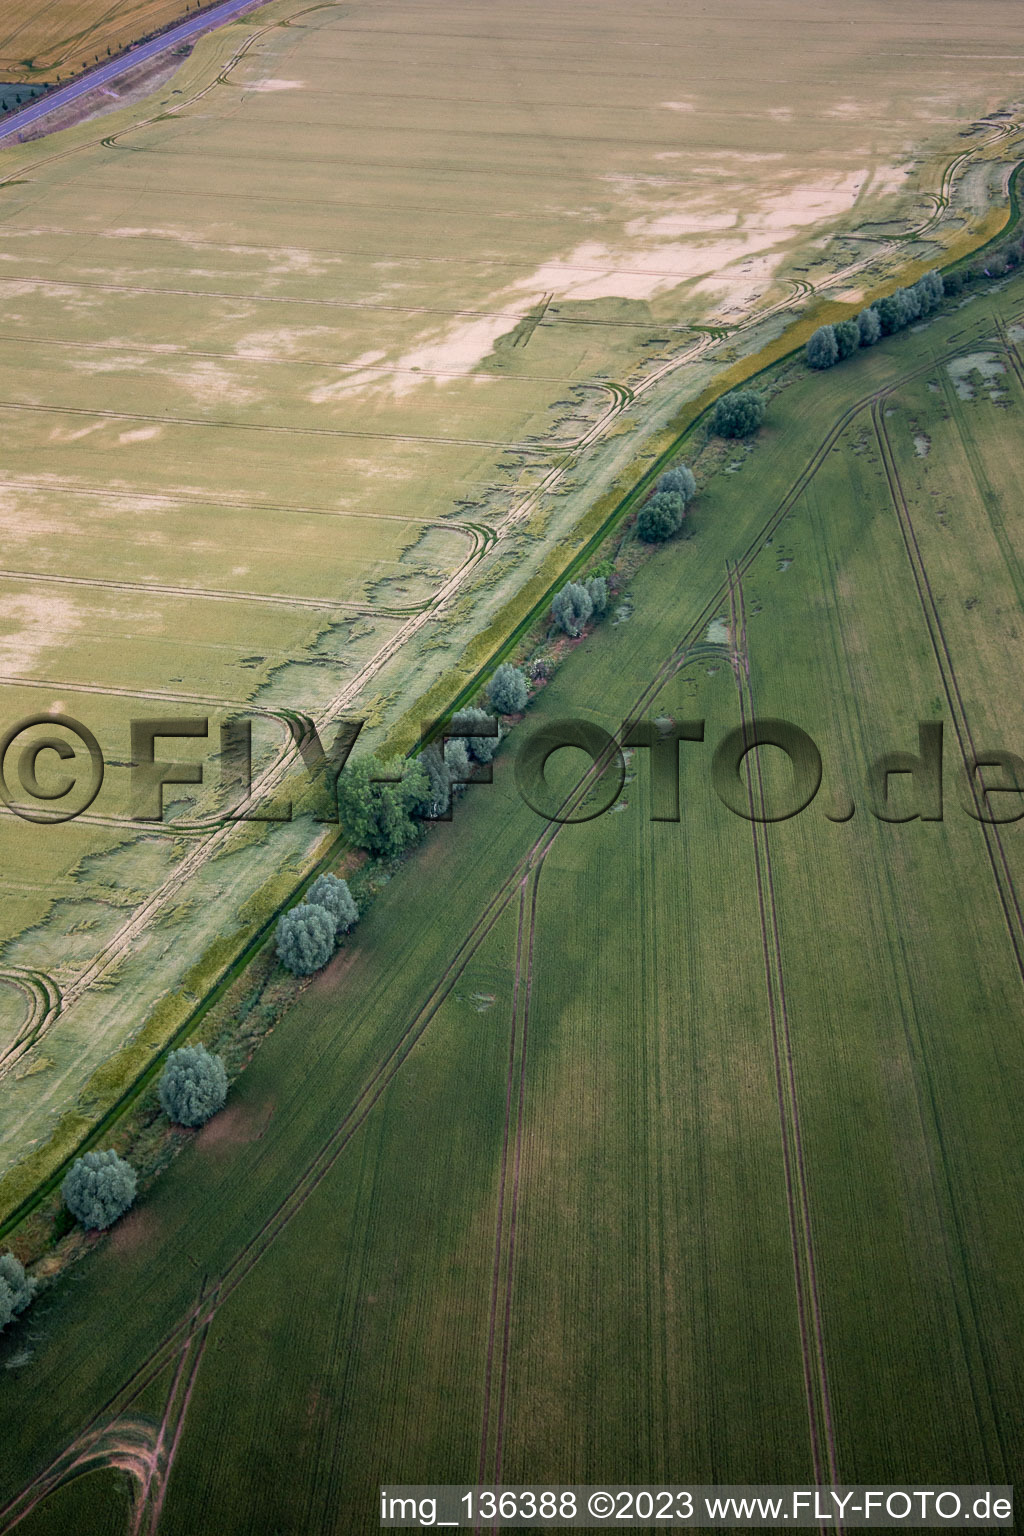 Luftbild von Verlauf des Bachs Getel im Ortsteil Radisleben in Ballenstedt im Bundesland Sachsen-Anhalt, Deutschland